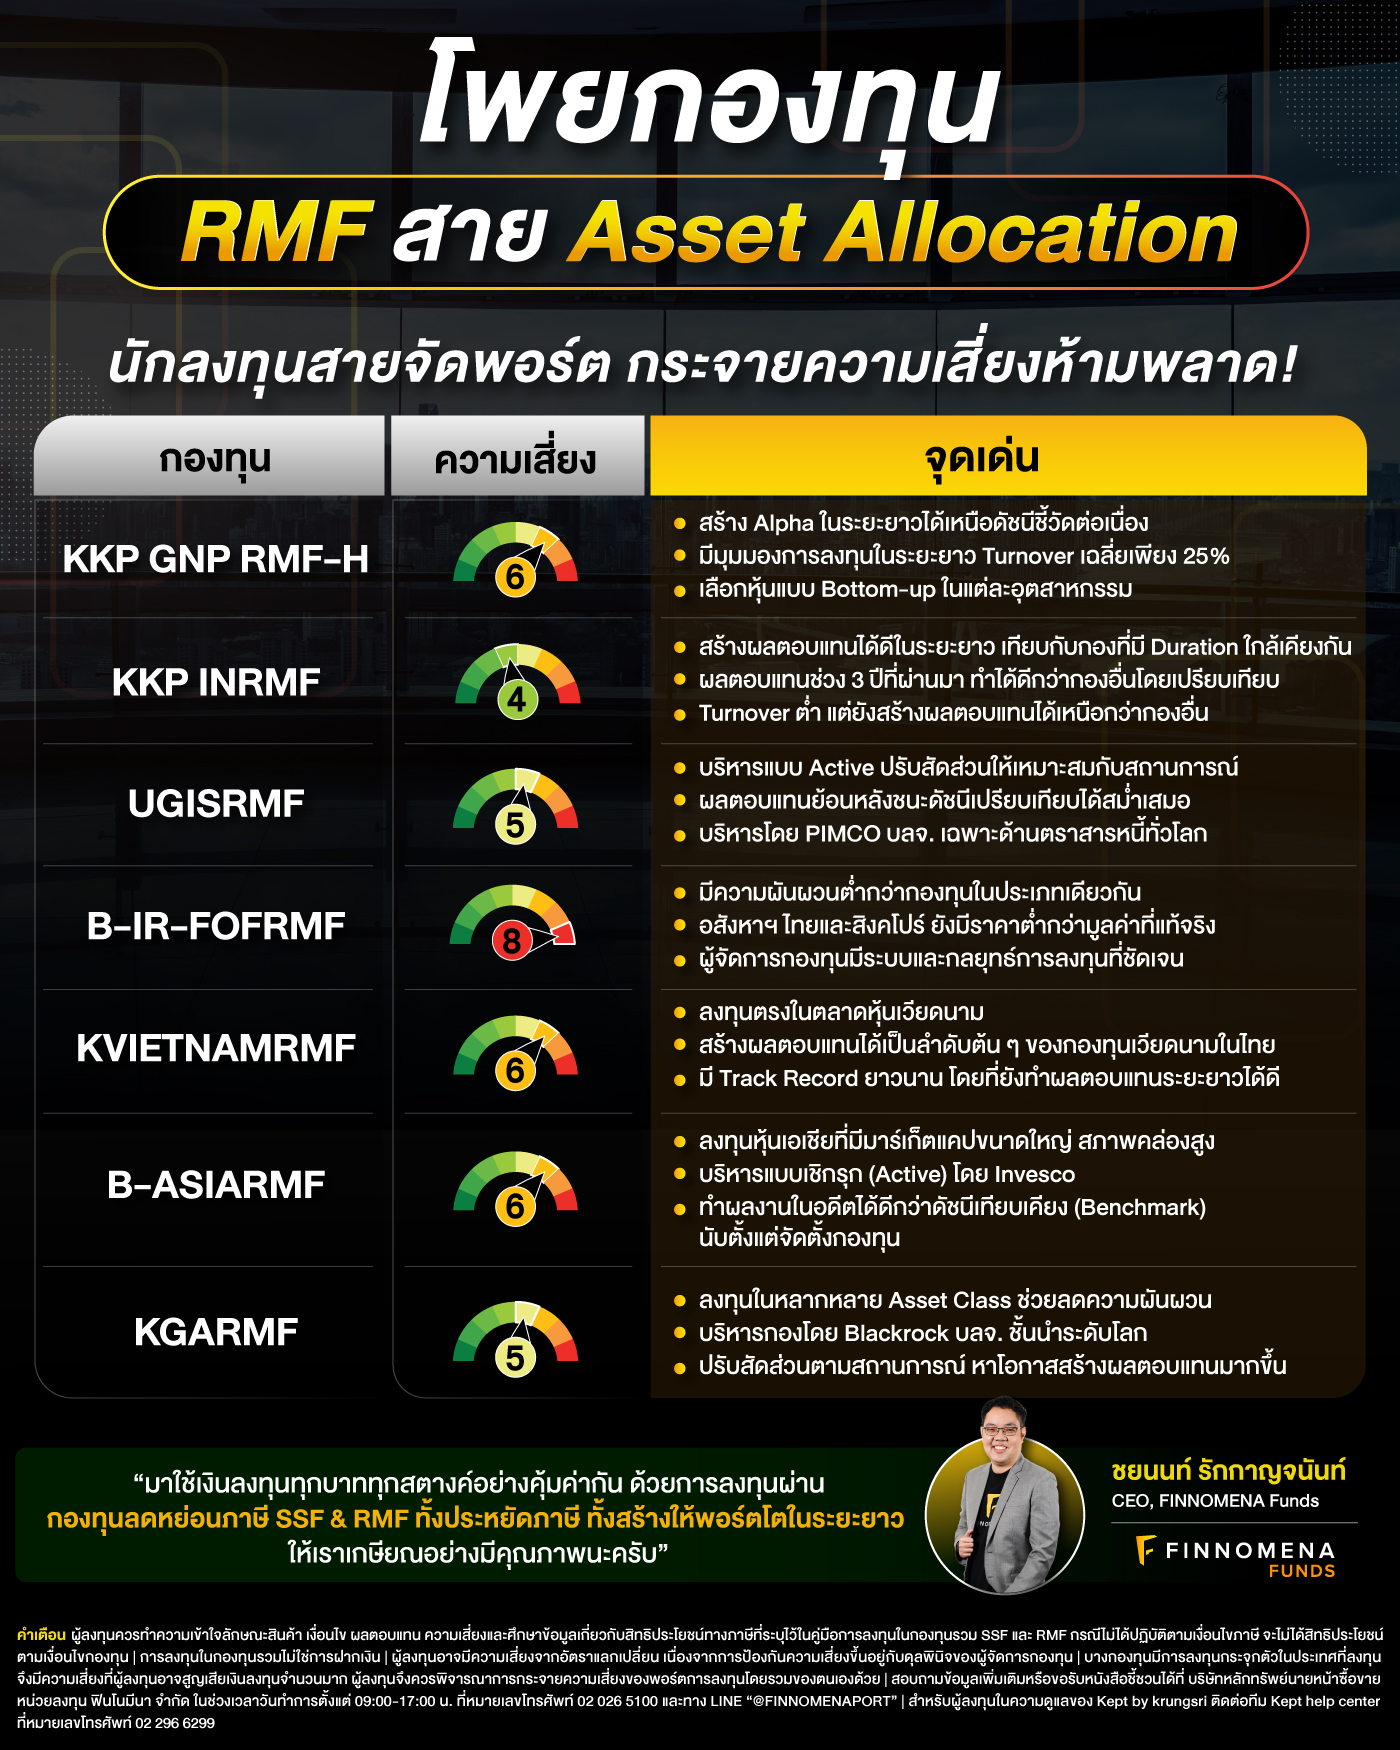 โพยกองทุน SSF & RMF สาย Asset Allocation: นักลงทุนสายจัดพอร์ต กระจายความเสี่ยงห้ามพลาด!